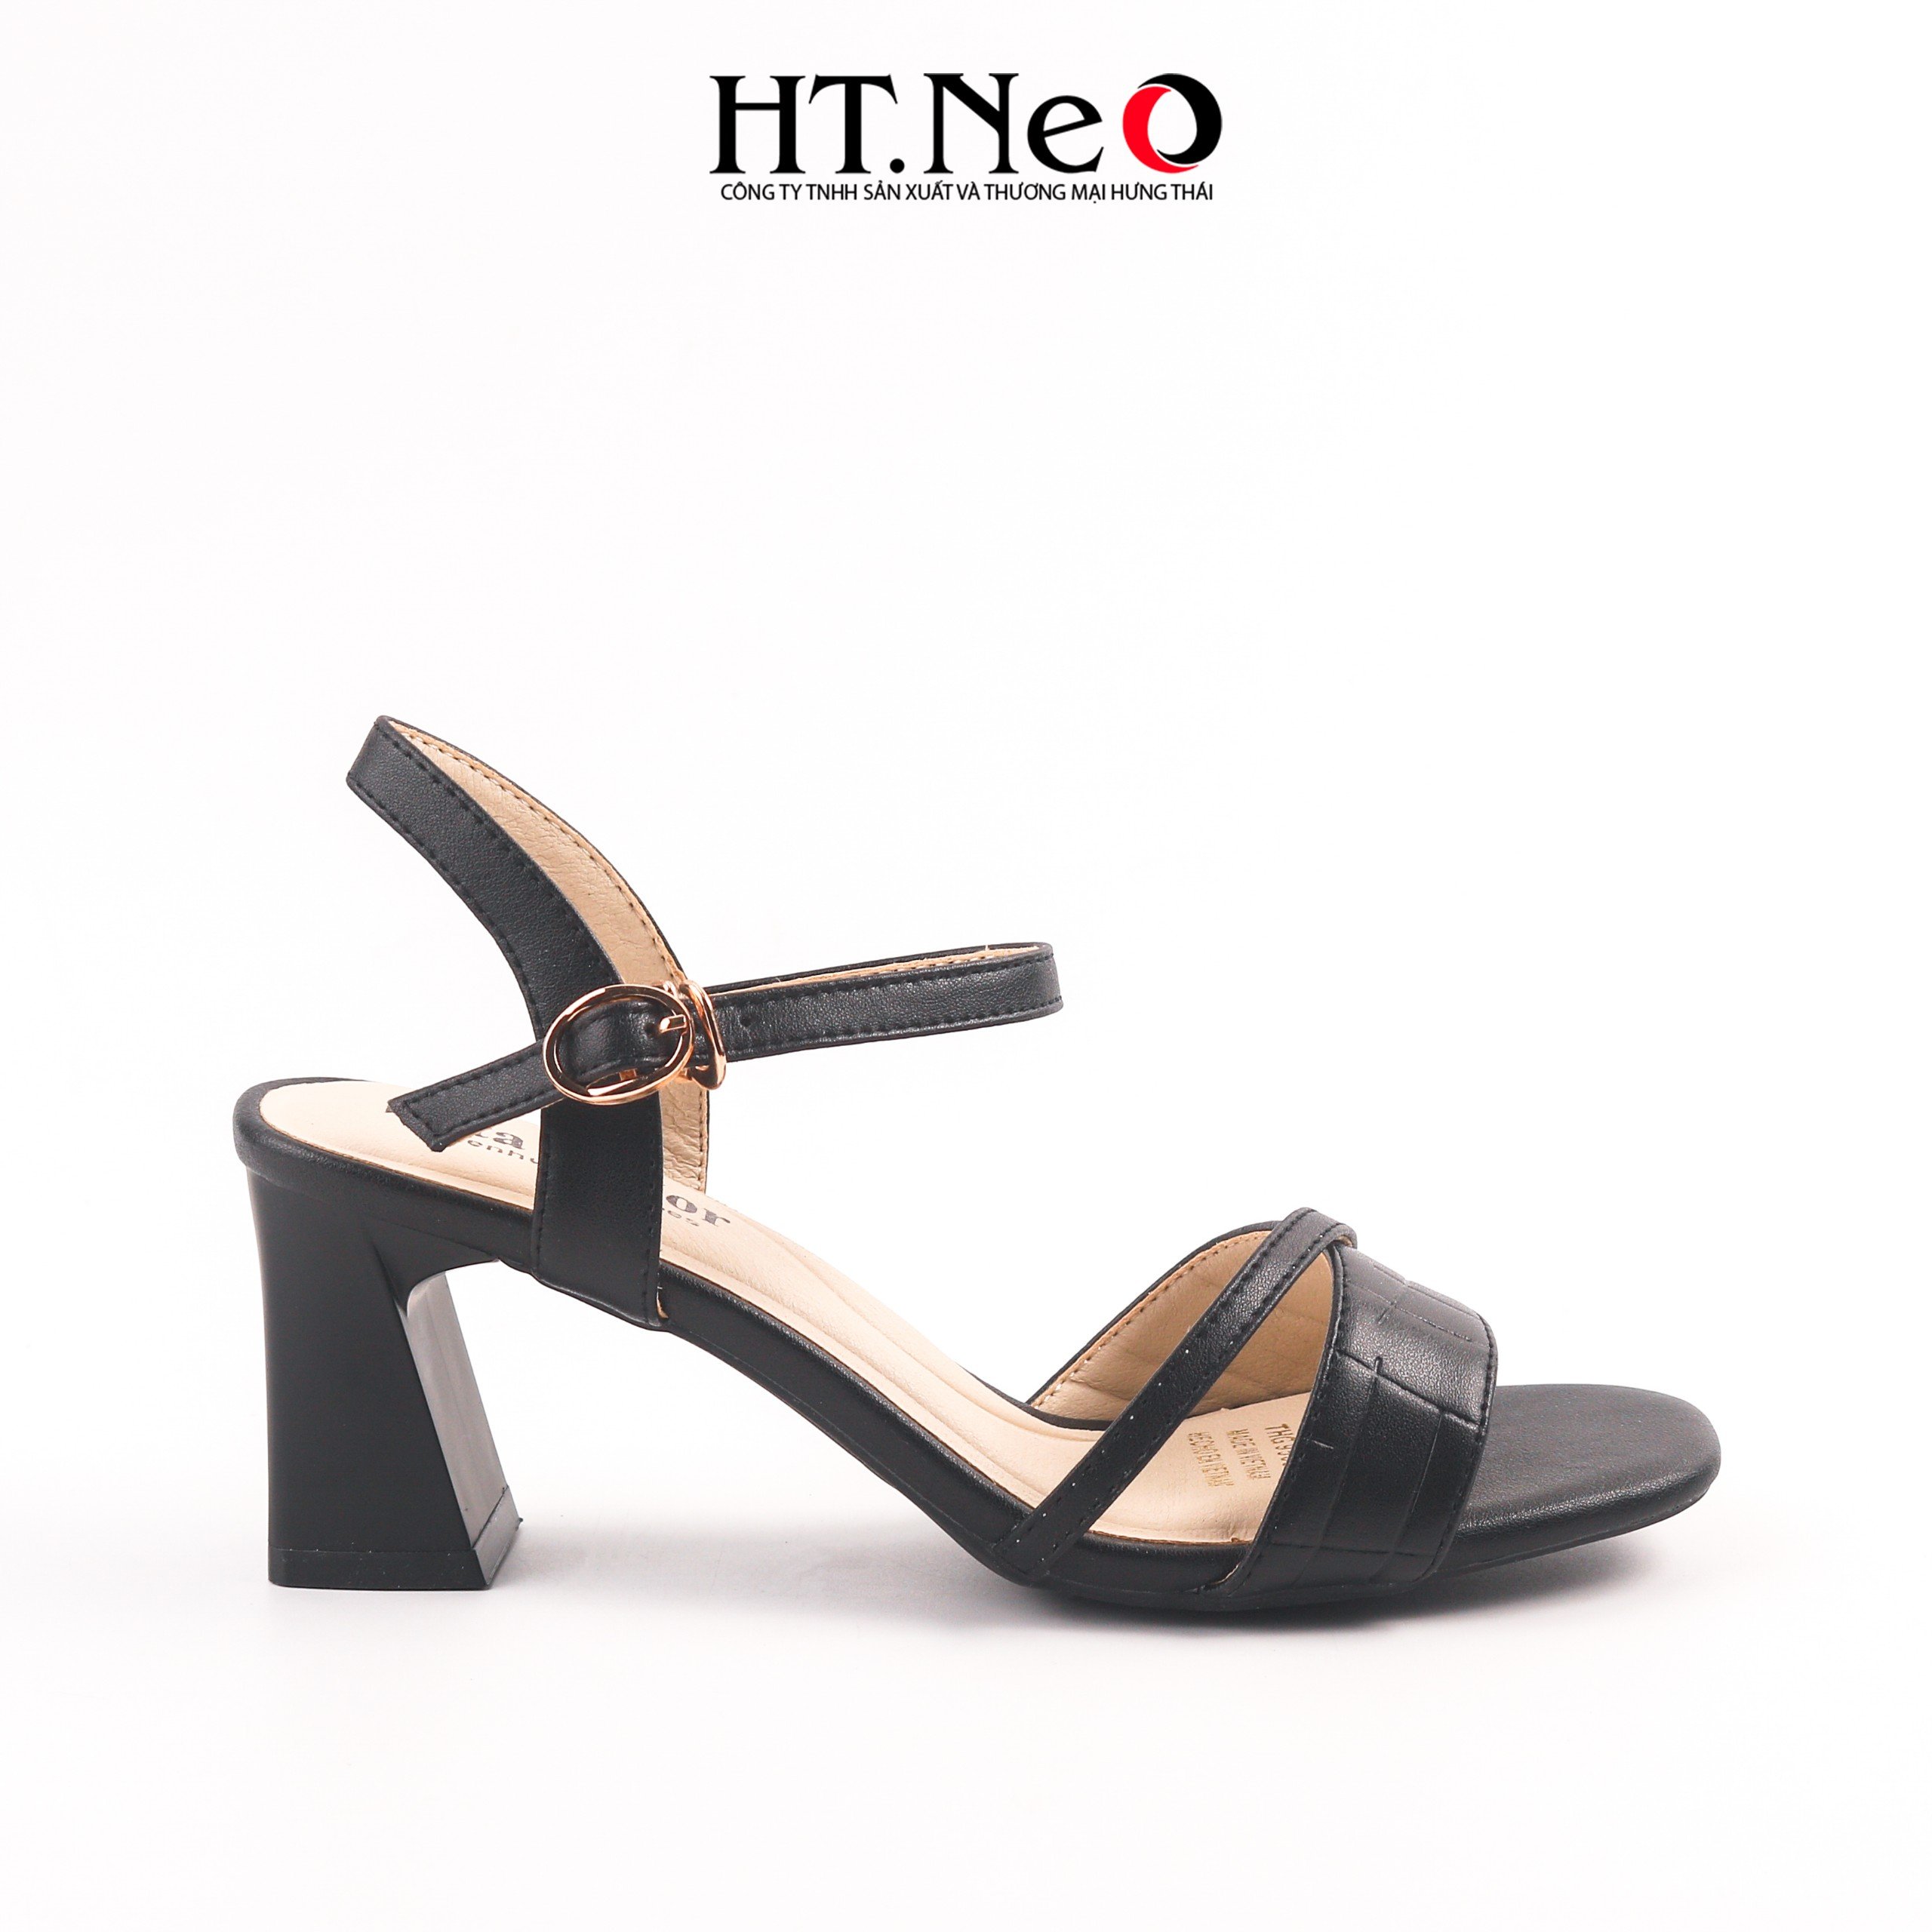 Sandal nữ thiết kế đơn giản với quai vắt chéo, được làm từ chất liệu da cao cấp. cao 5p đế trụ, đi cực êm chân, thoải mái SDN331